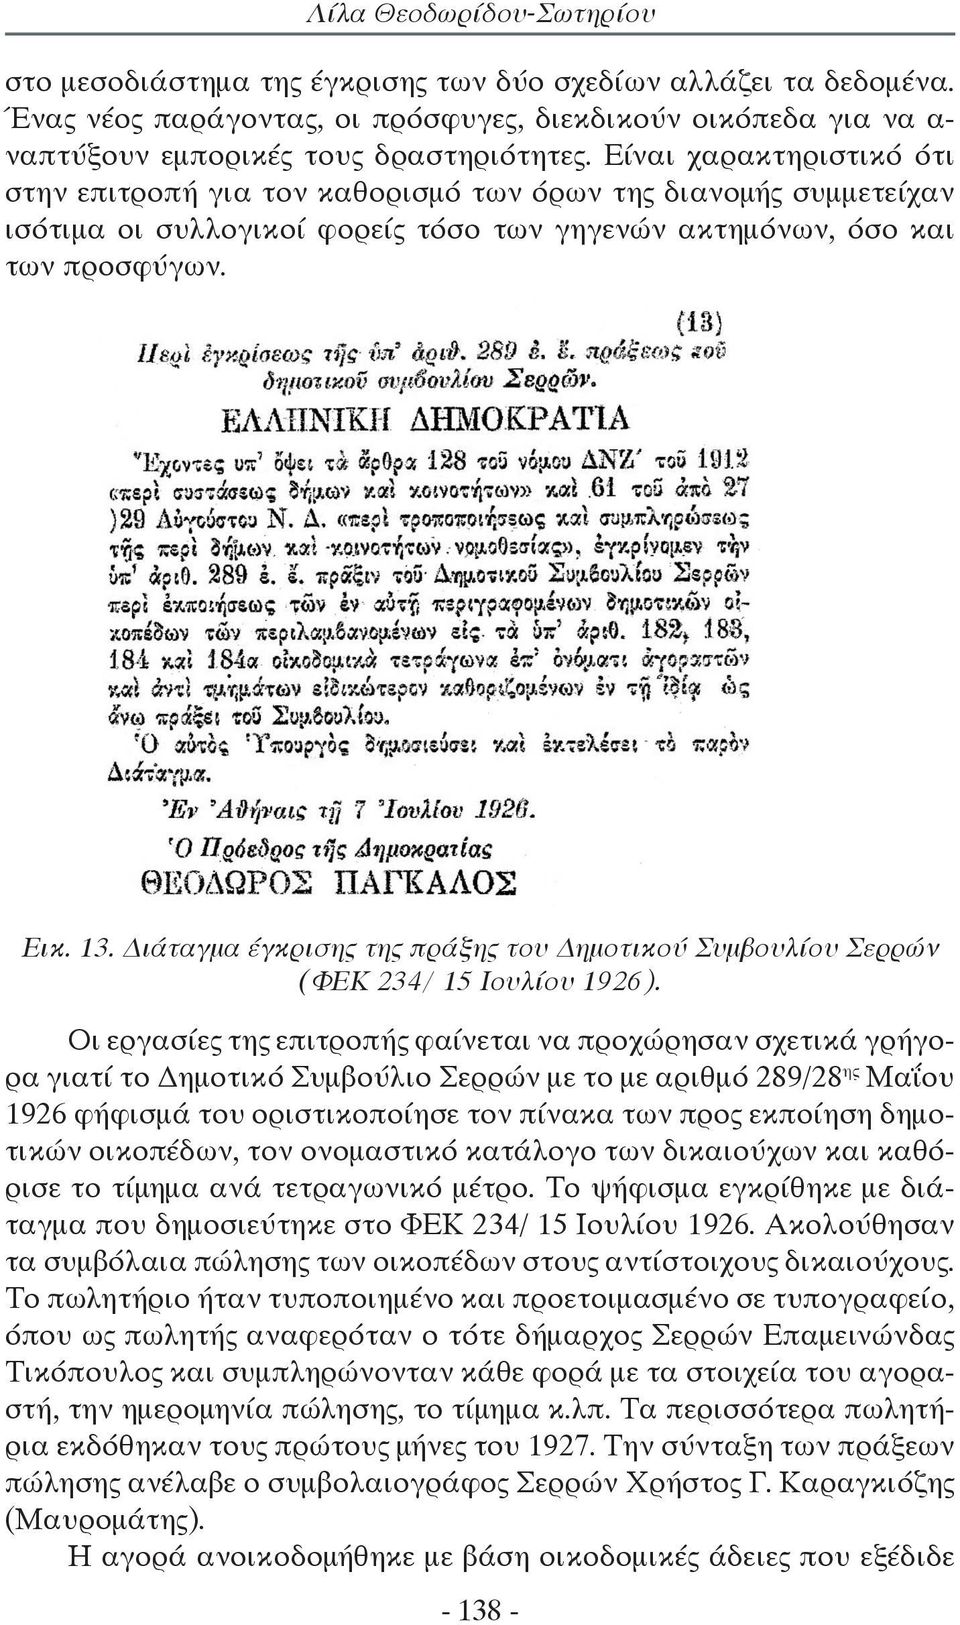 Διάταγμα έγκρισης της πράξης του Δημοτικού Συμβουλίου Σερρών (ΦΕΚ 234/ 15 Ιουλίου 1926).